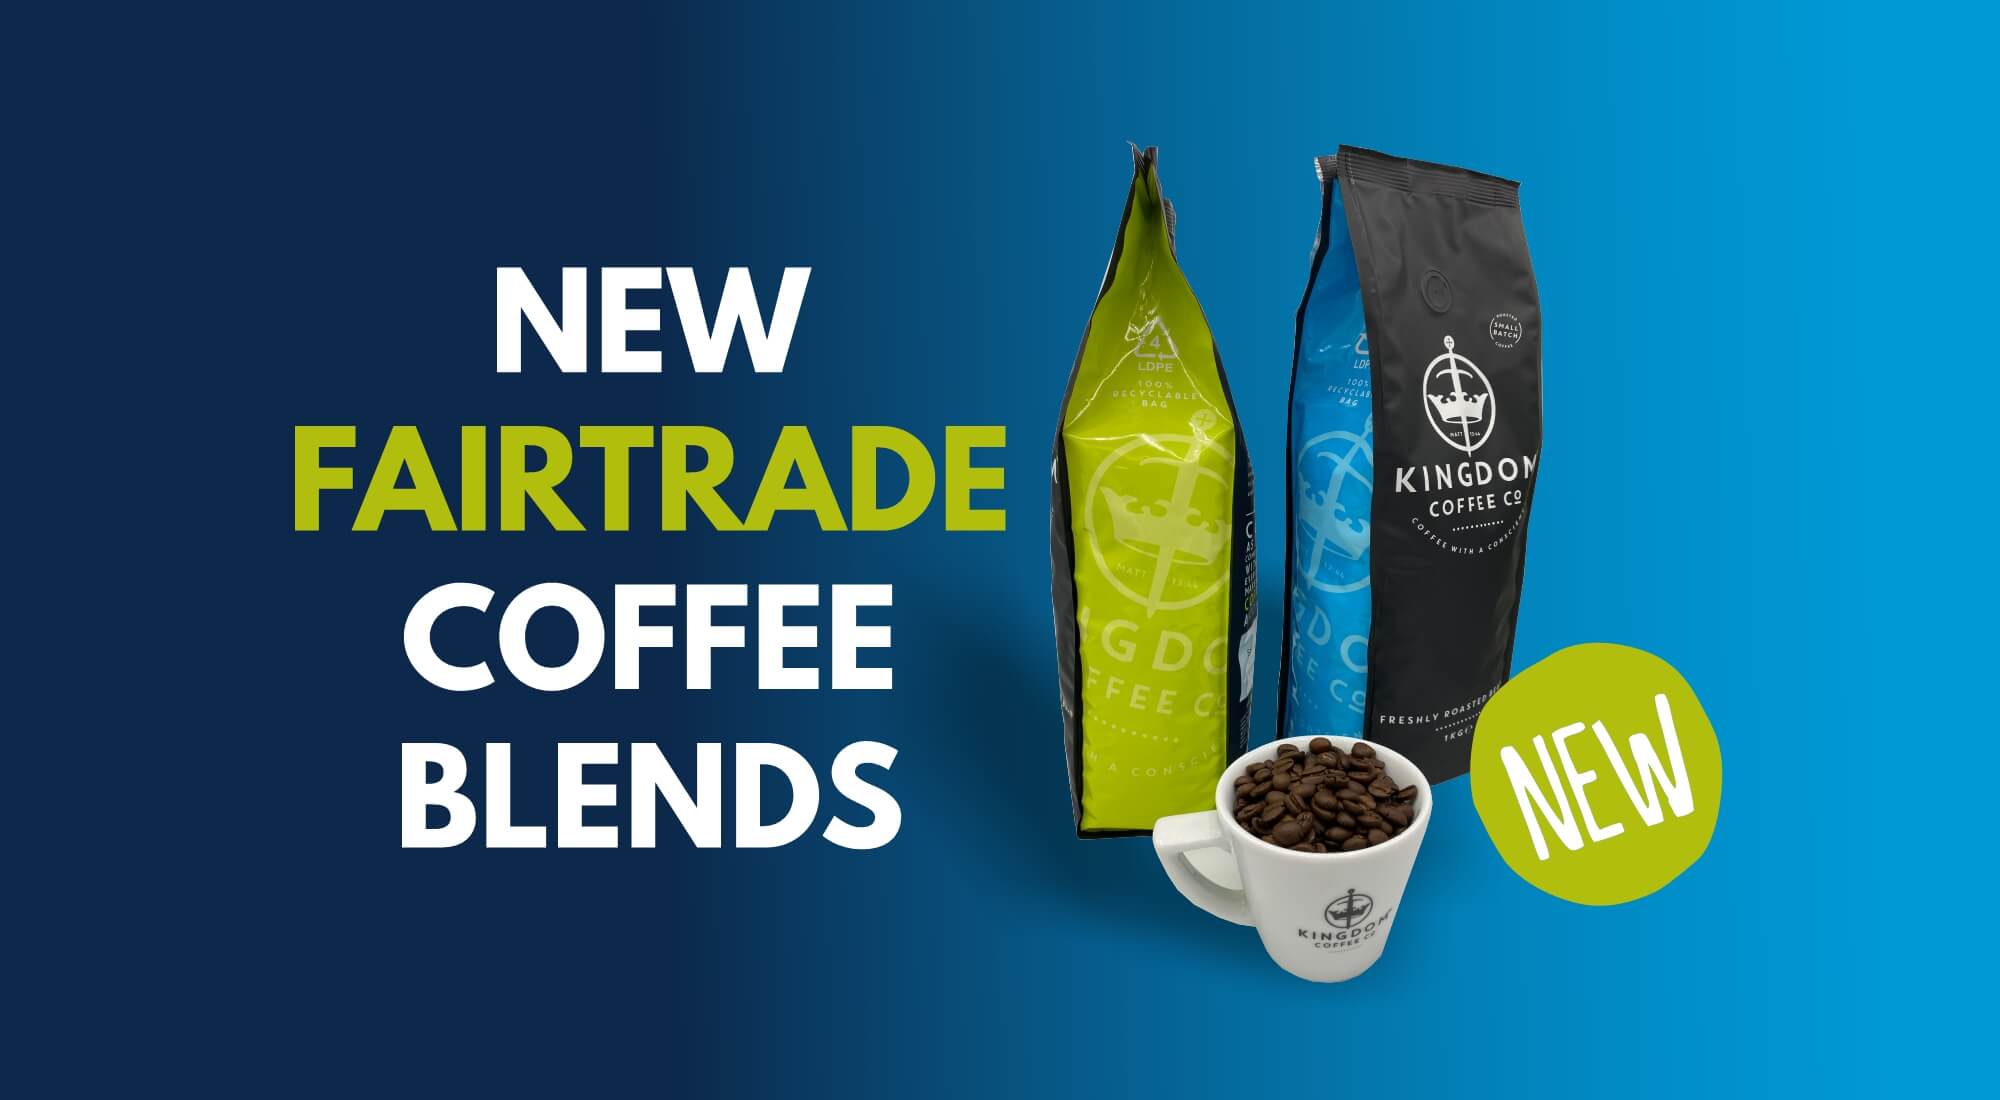 New FAIRTRADE Coffee Blends